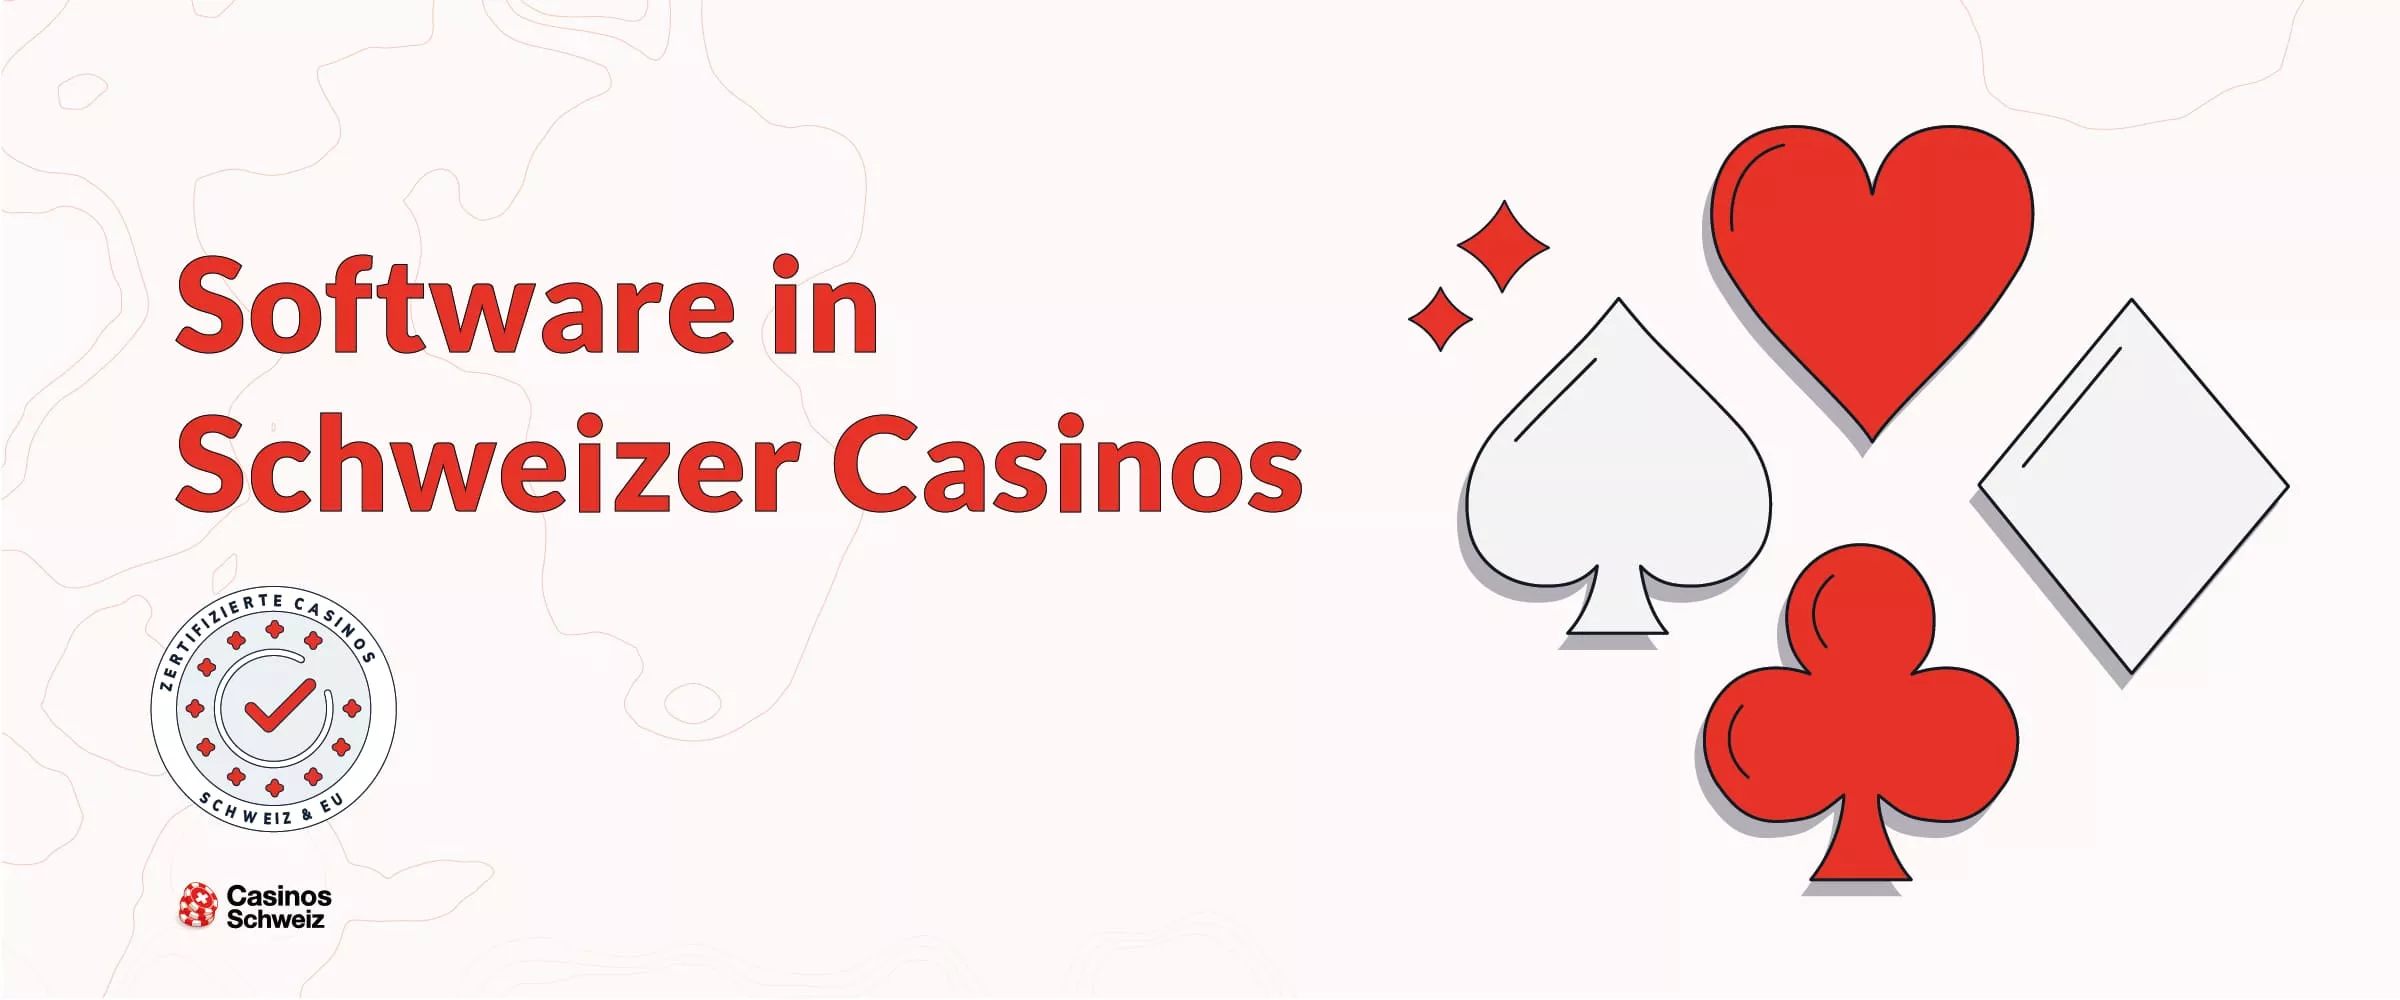 Software in Schweizer Casinos